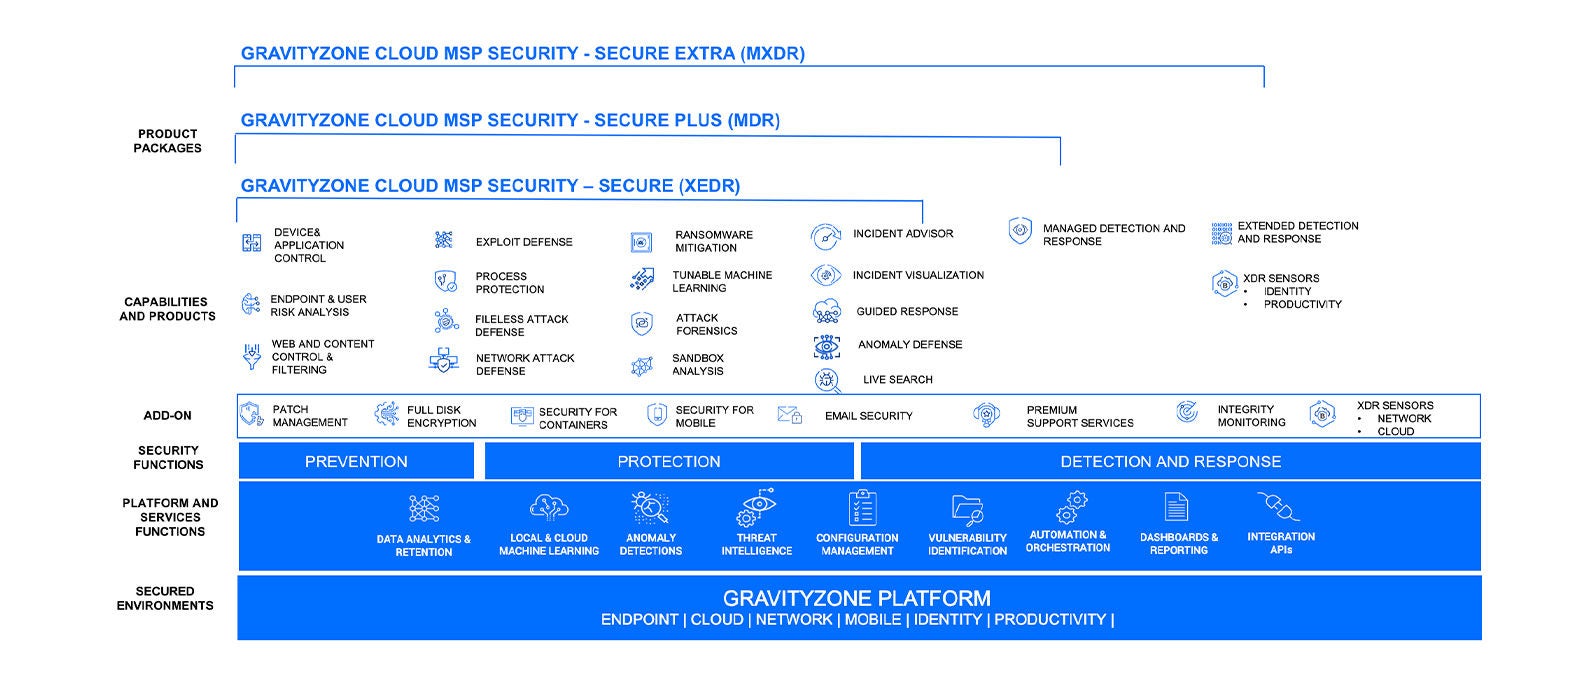 Prezentare generală a soluțiilor de securitate GravityZone pentru MSP-uri